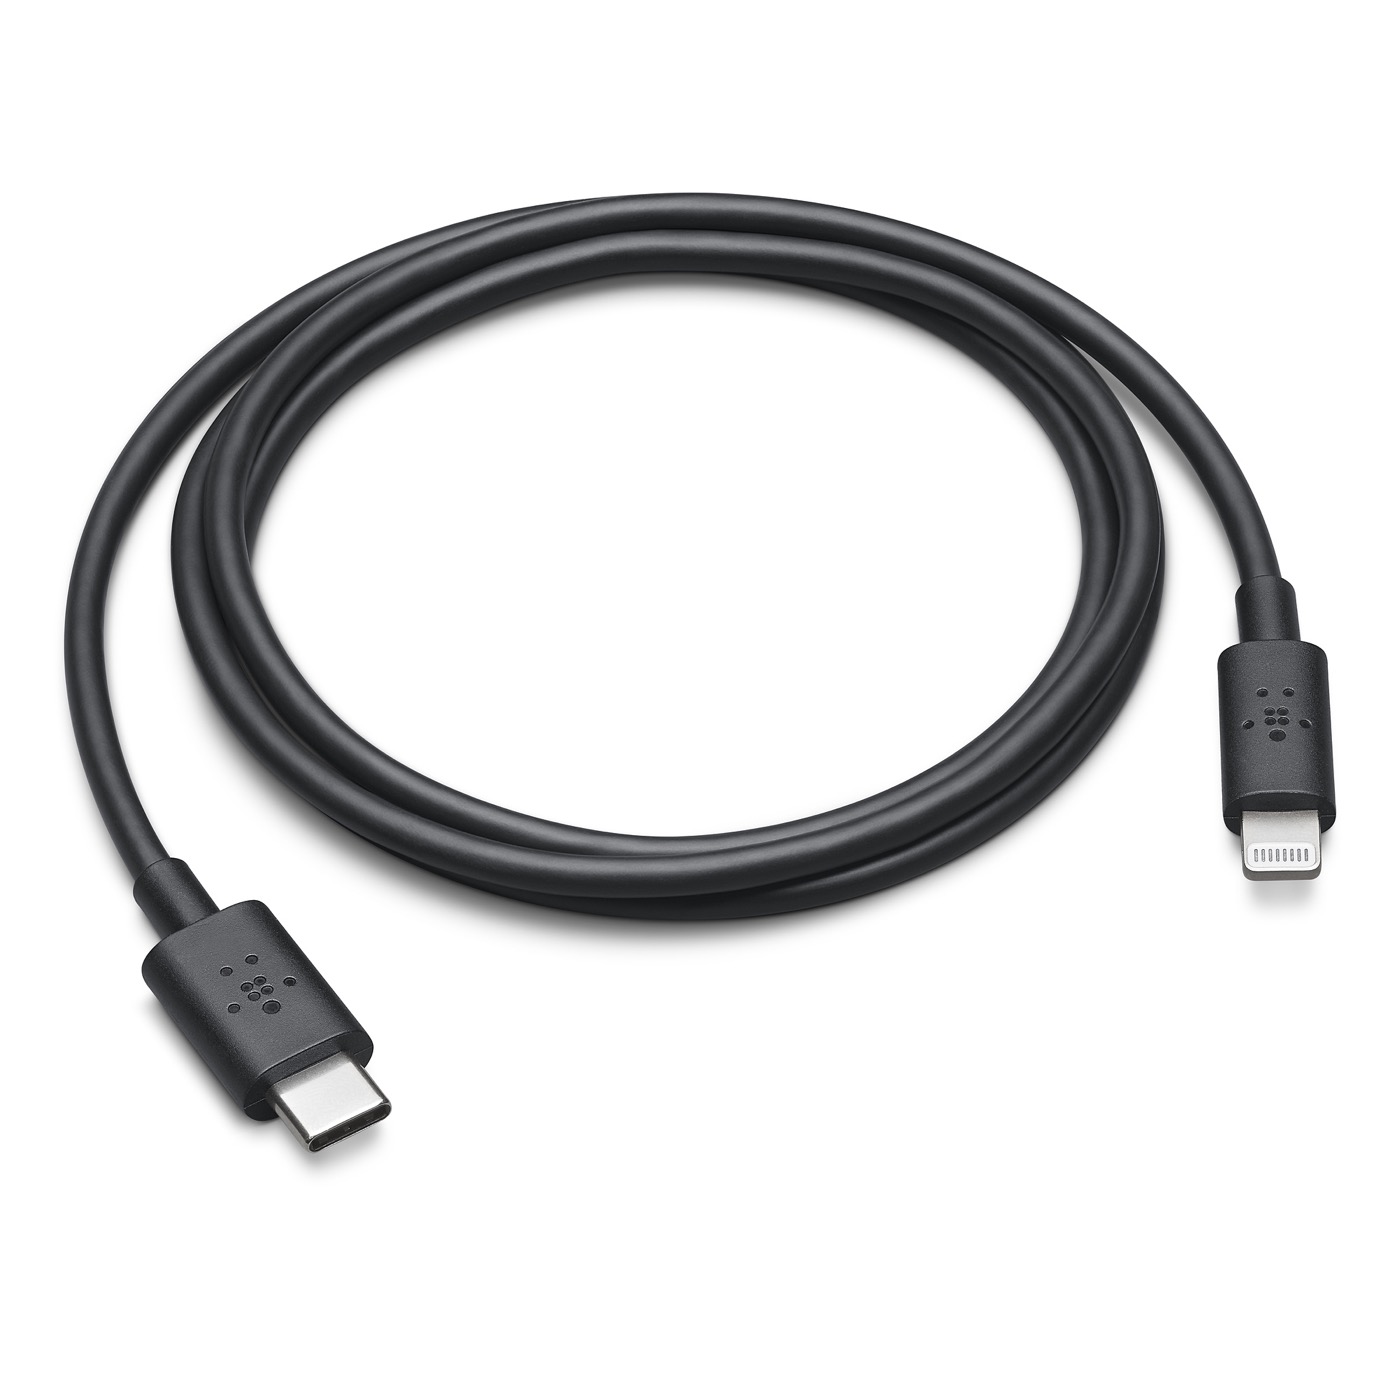 Apple公式サイト、Belkin製のUSB−C − Lightningケーブル｢Belkin BOOST↑CHARGE USB-C − Lightning Cable｣を販売開始